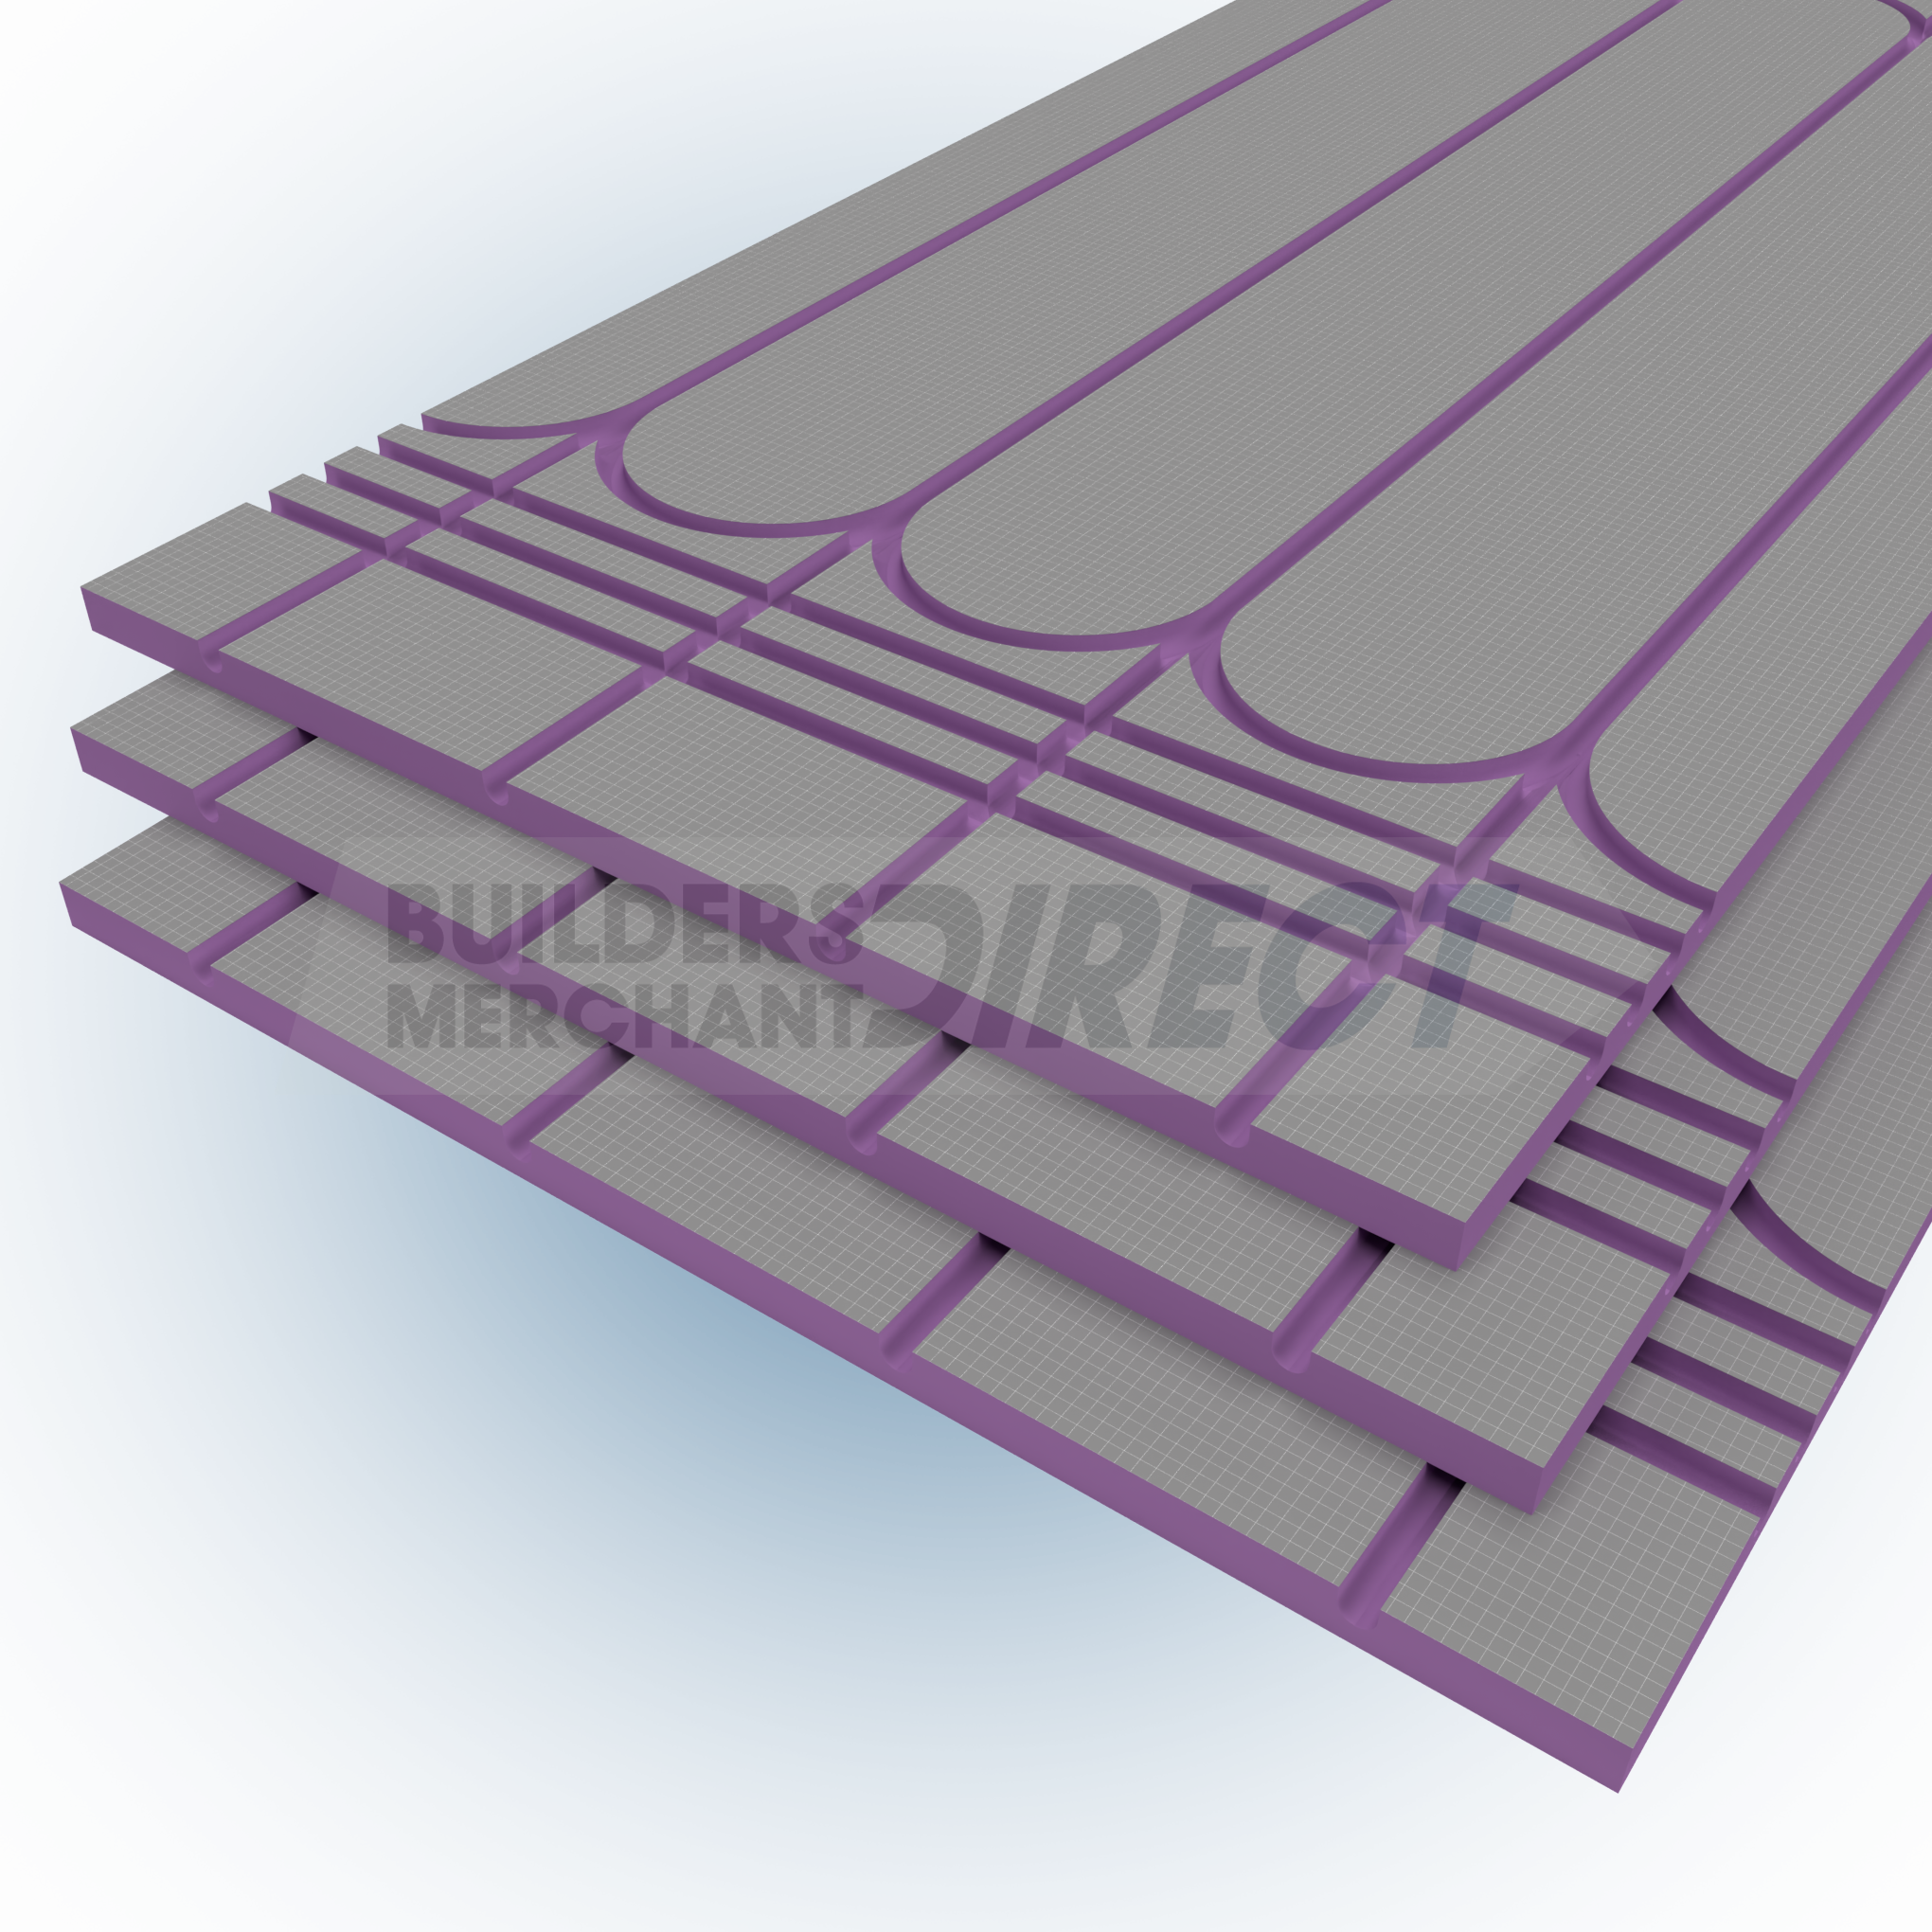 Builders Merchant Direct Tekwarm Lite LP UFH Board (Underfloor Heating Panel)